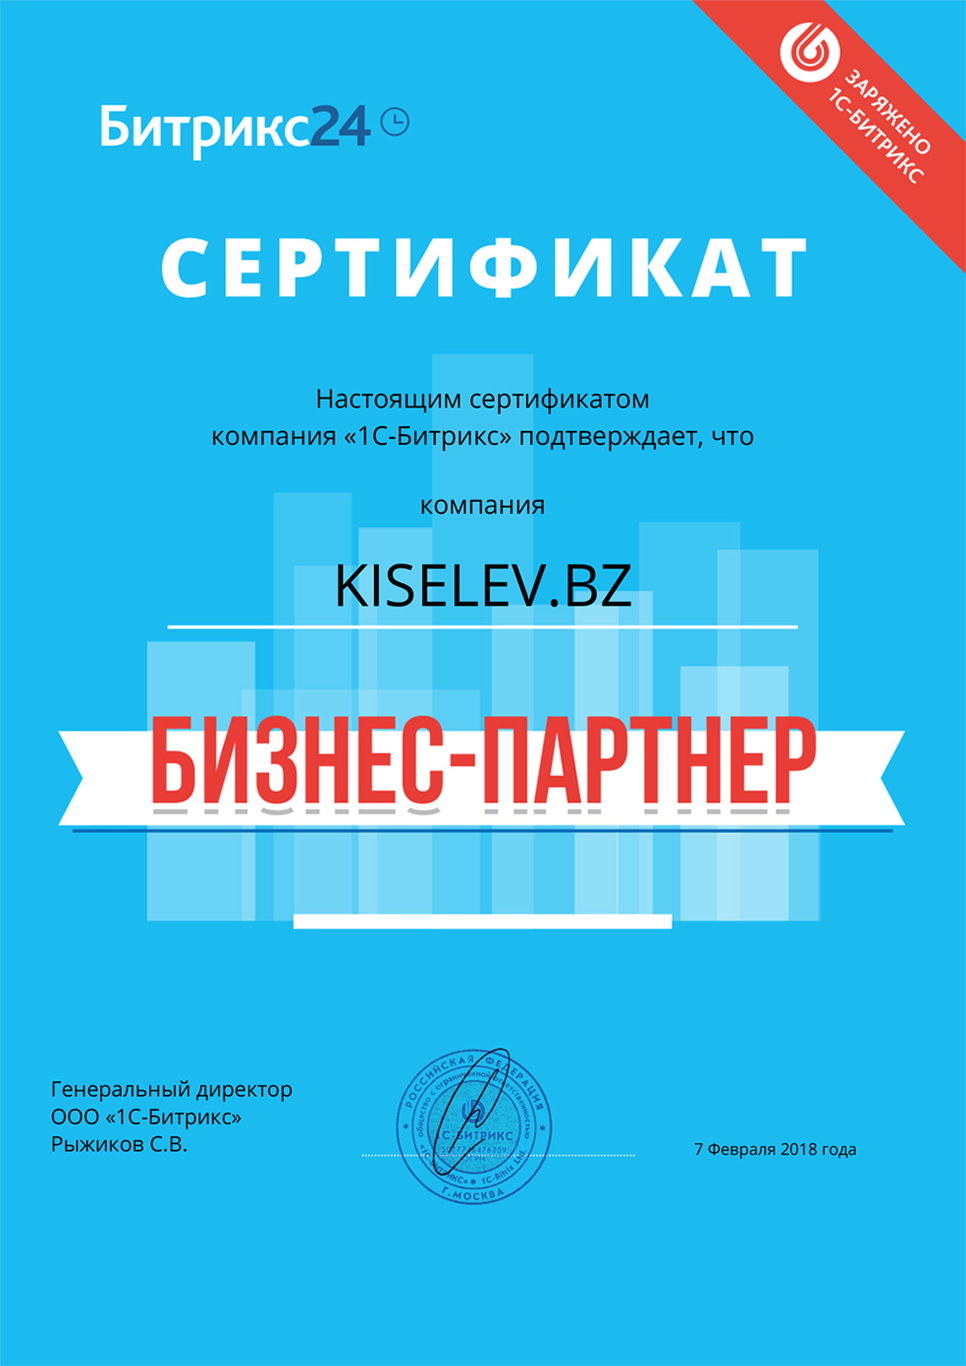 Сертификат партнёра по АМОСРМ в Каменске-Уральском